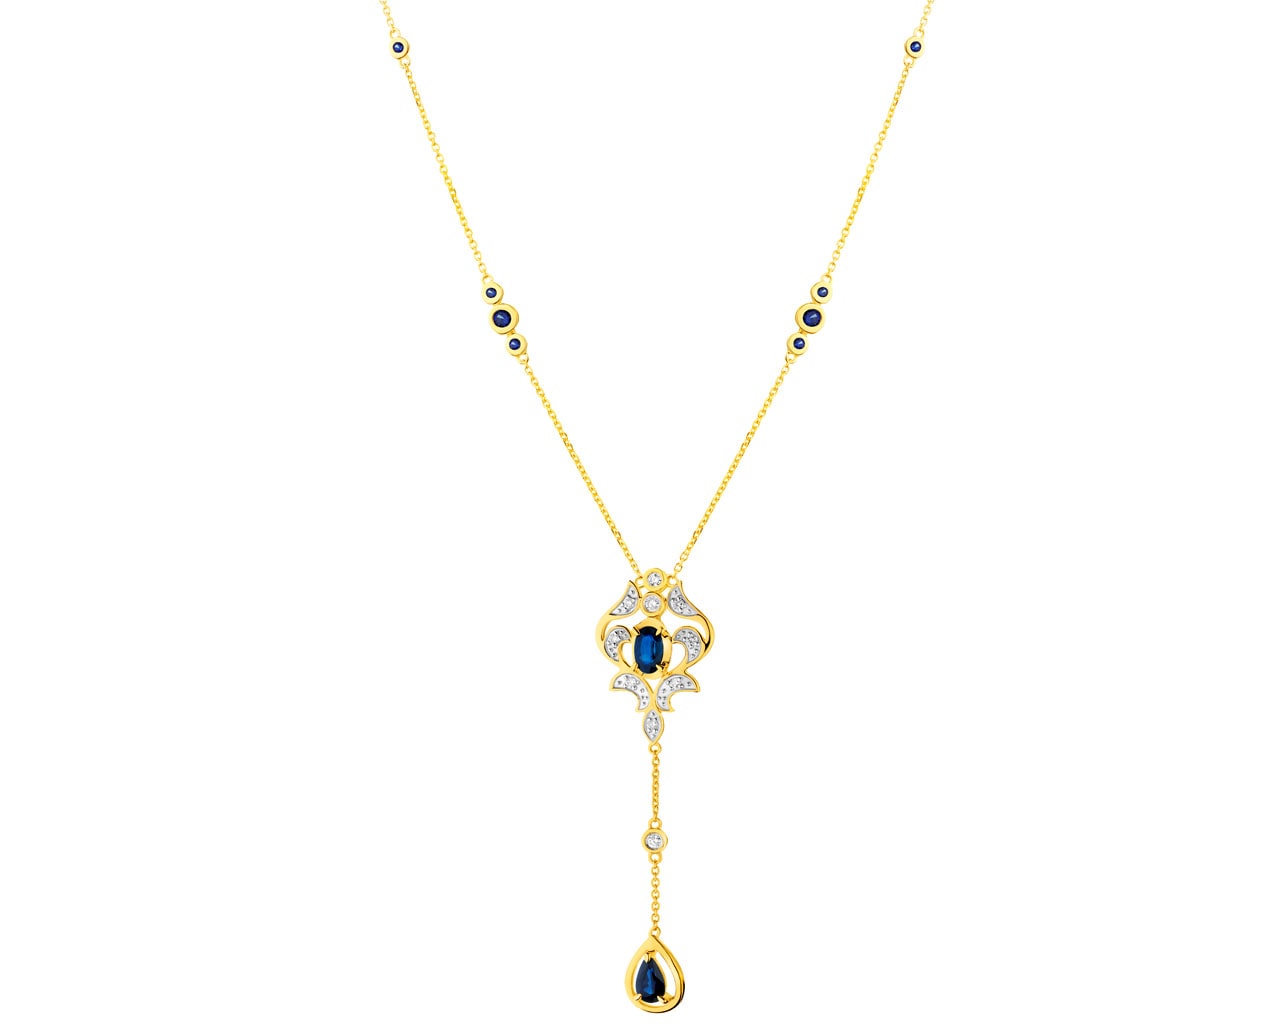 Zlatý náhrdelník s brilianty a safíry 0,09 ct - ryzost 585